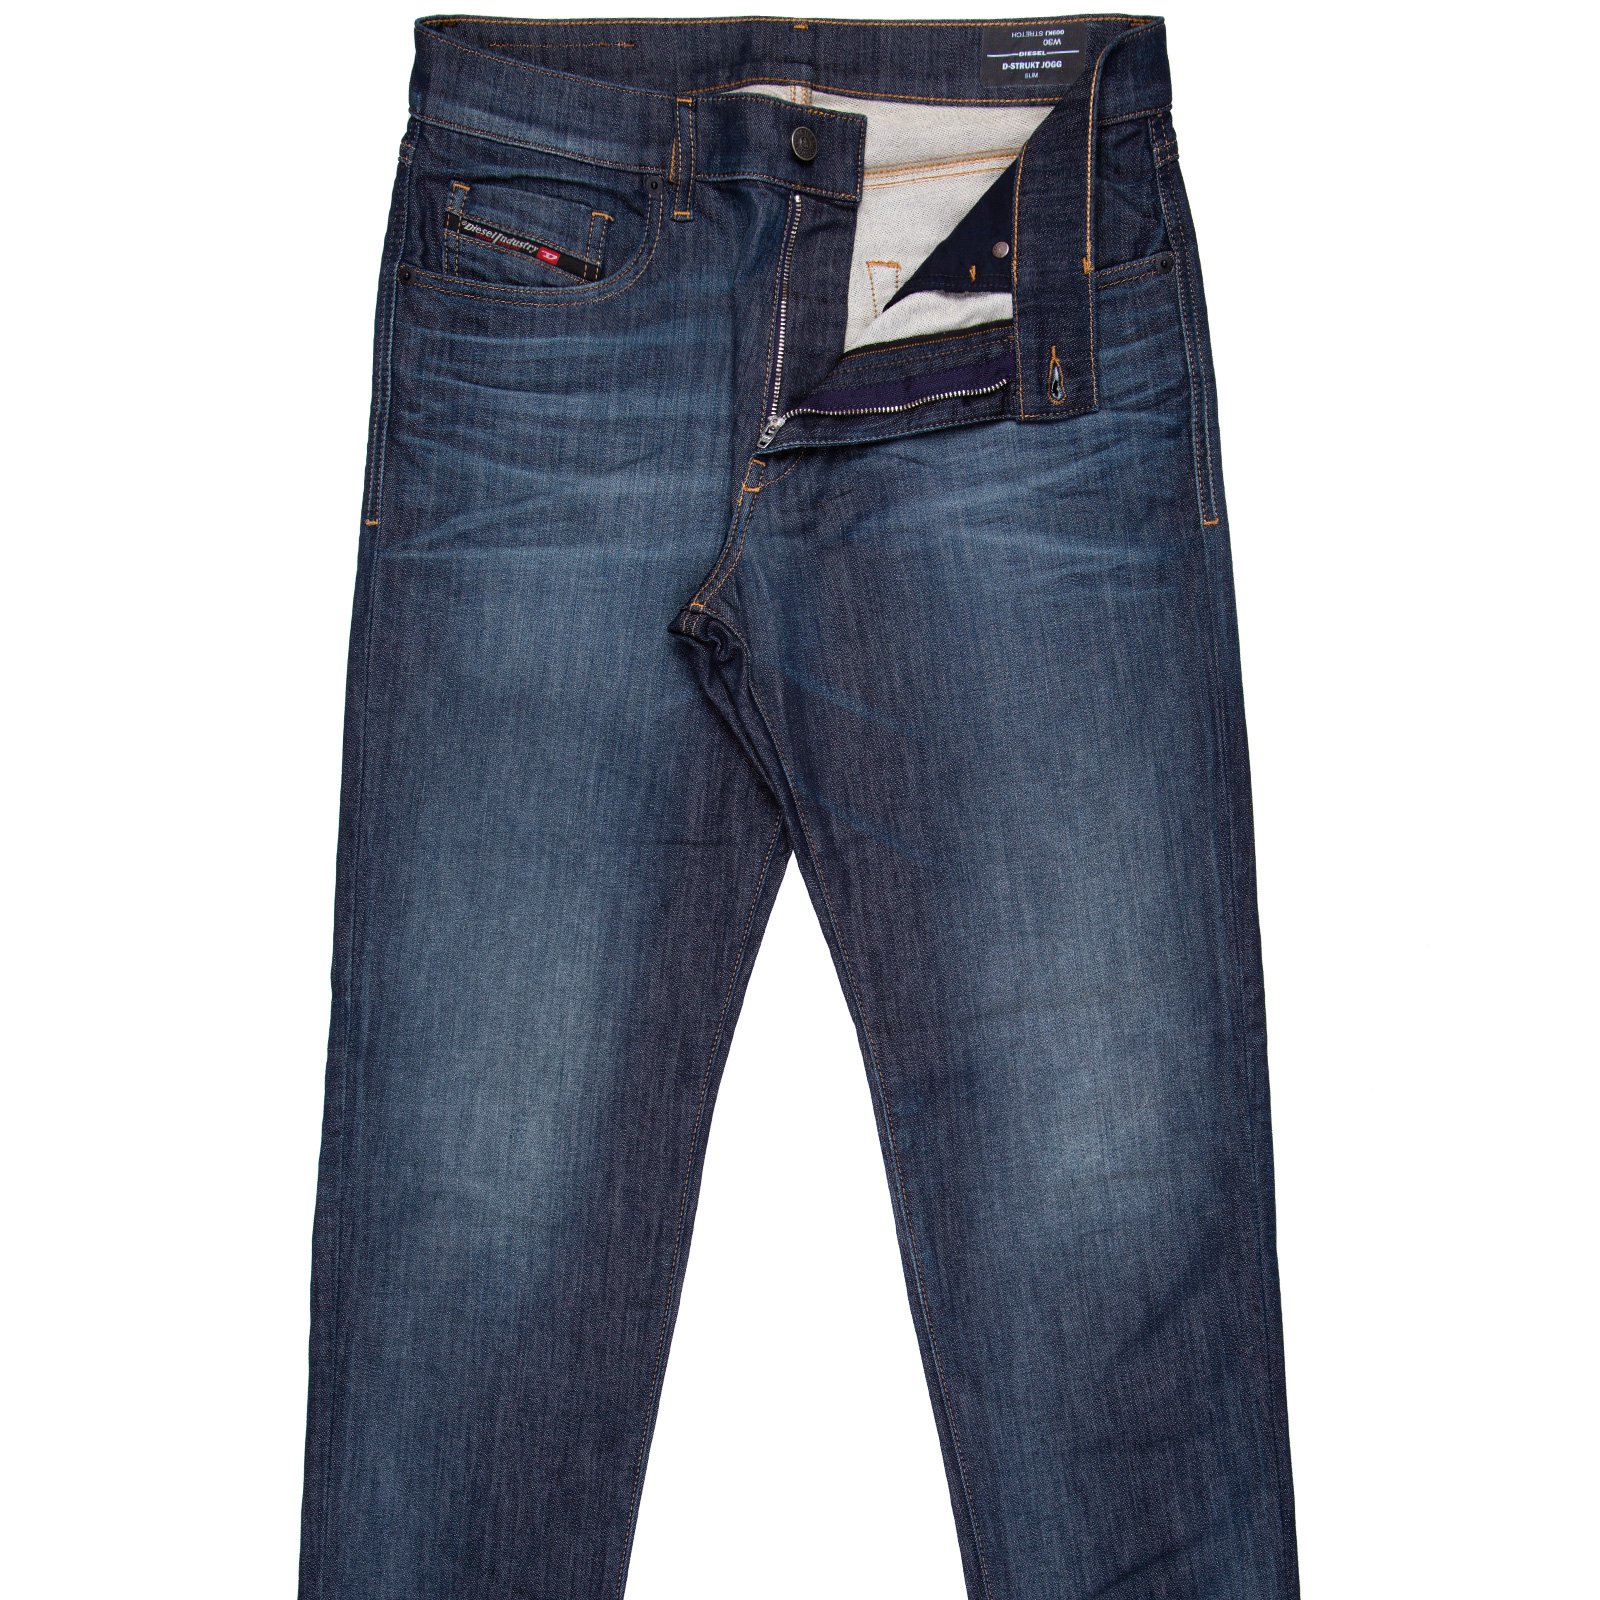 D-Strukt-T Jogg Jean - Jeans-Jogg Jeans : Fifth Avenue Menswear ...